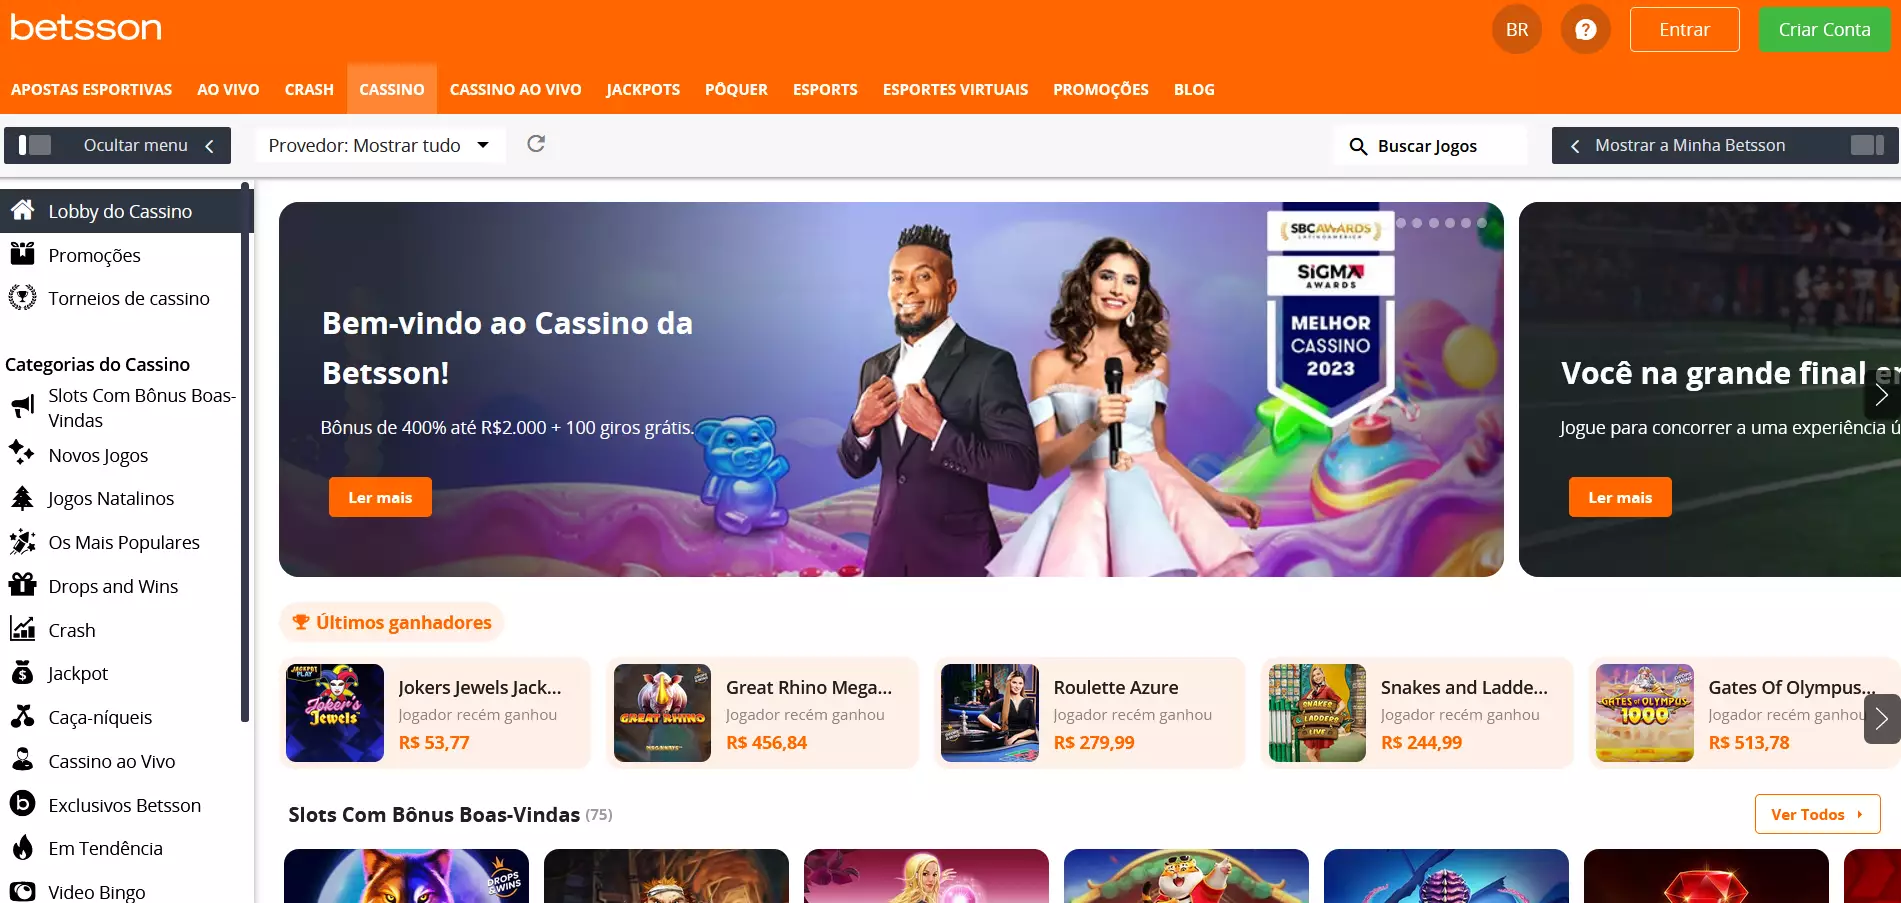 Mejores ofertas de giros gratis en casinos de Chile